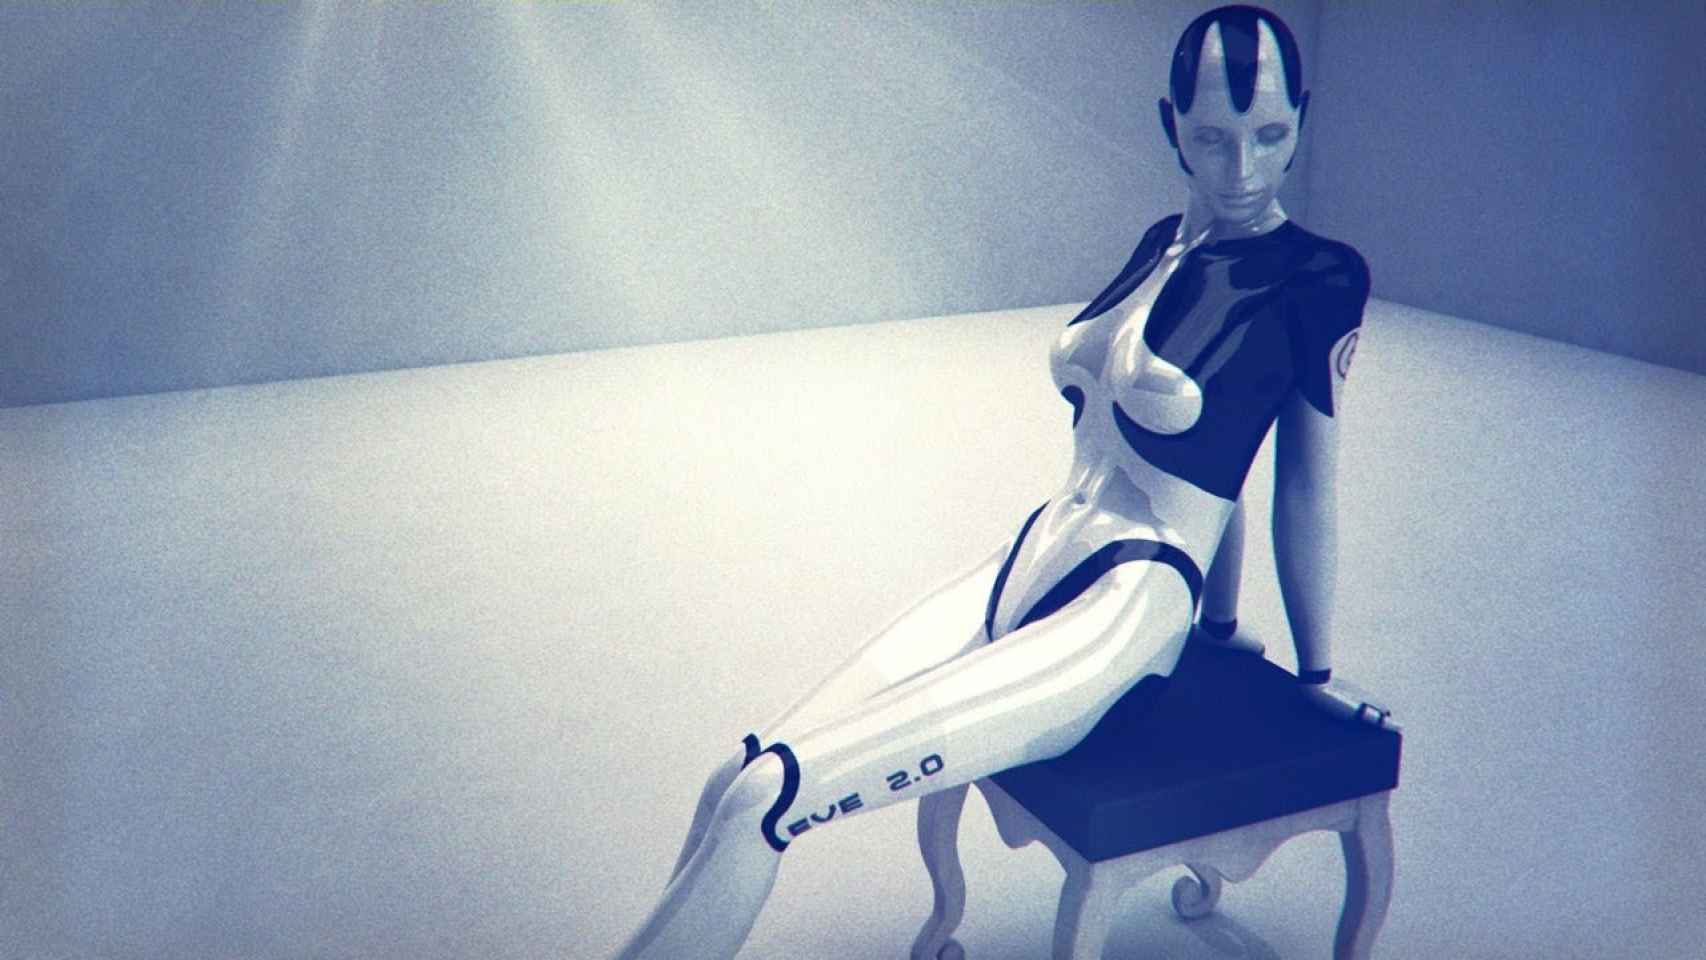 Los robots tendrán derechos